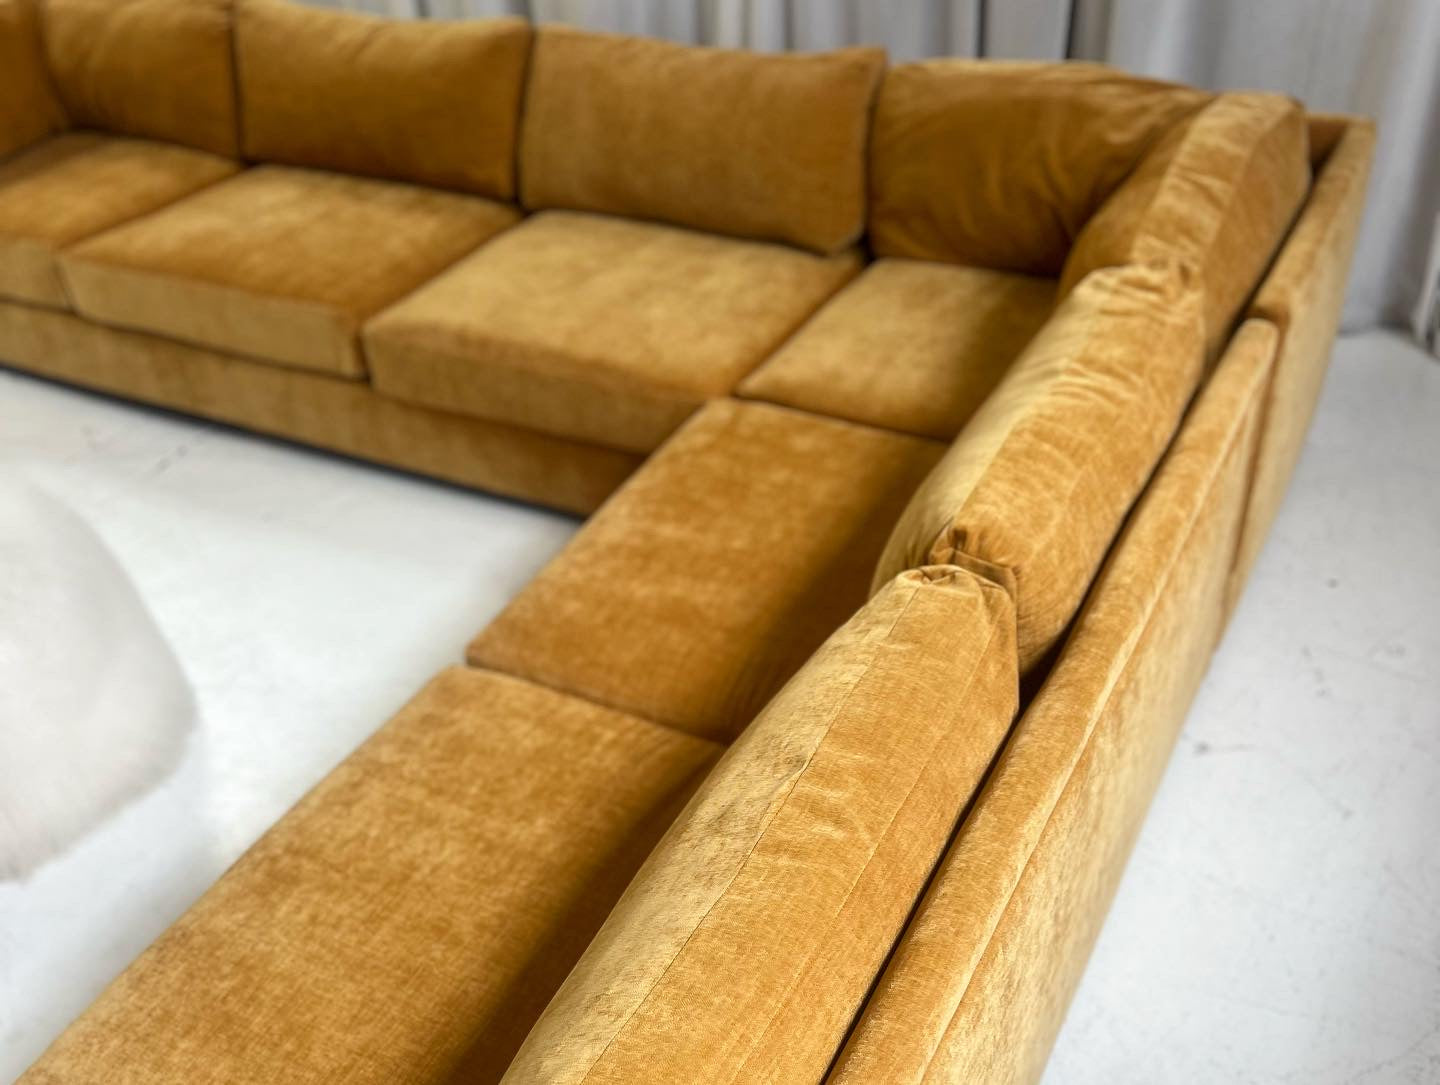 Bespoke Mustard Modular Sofa Set